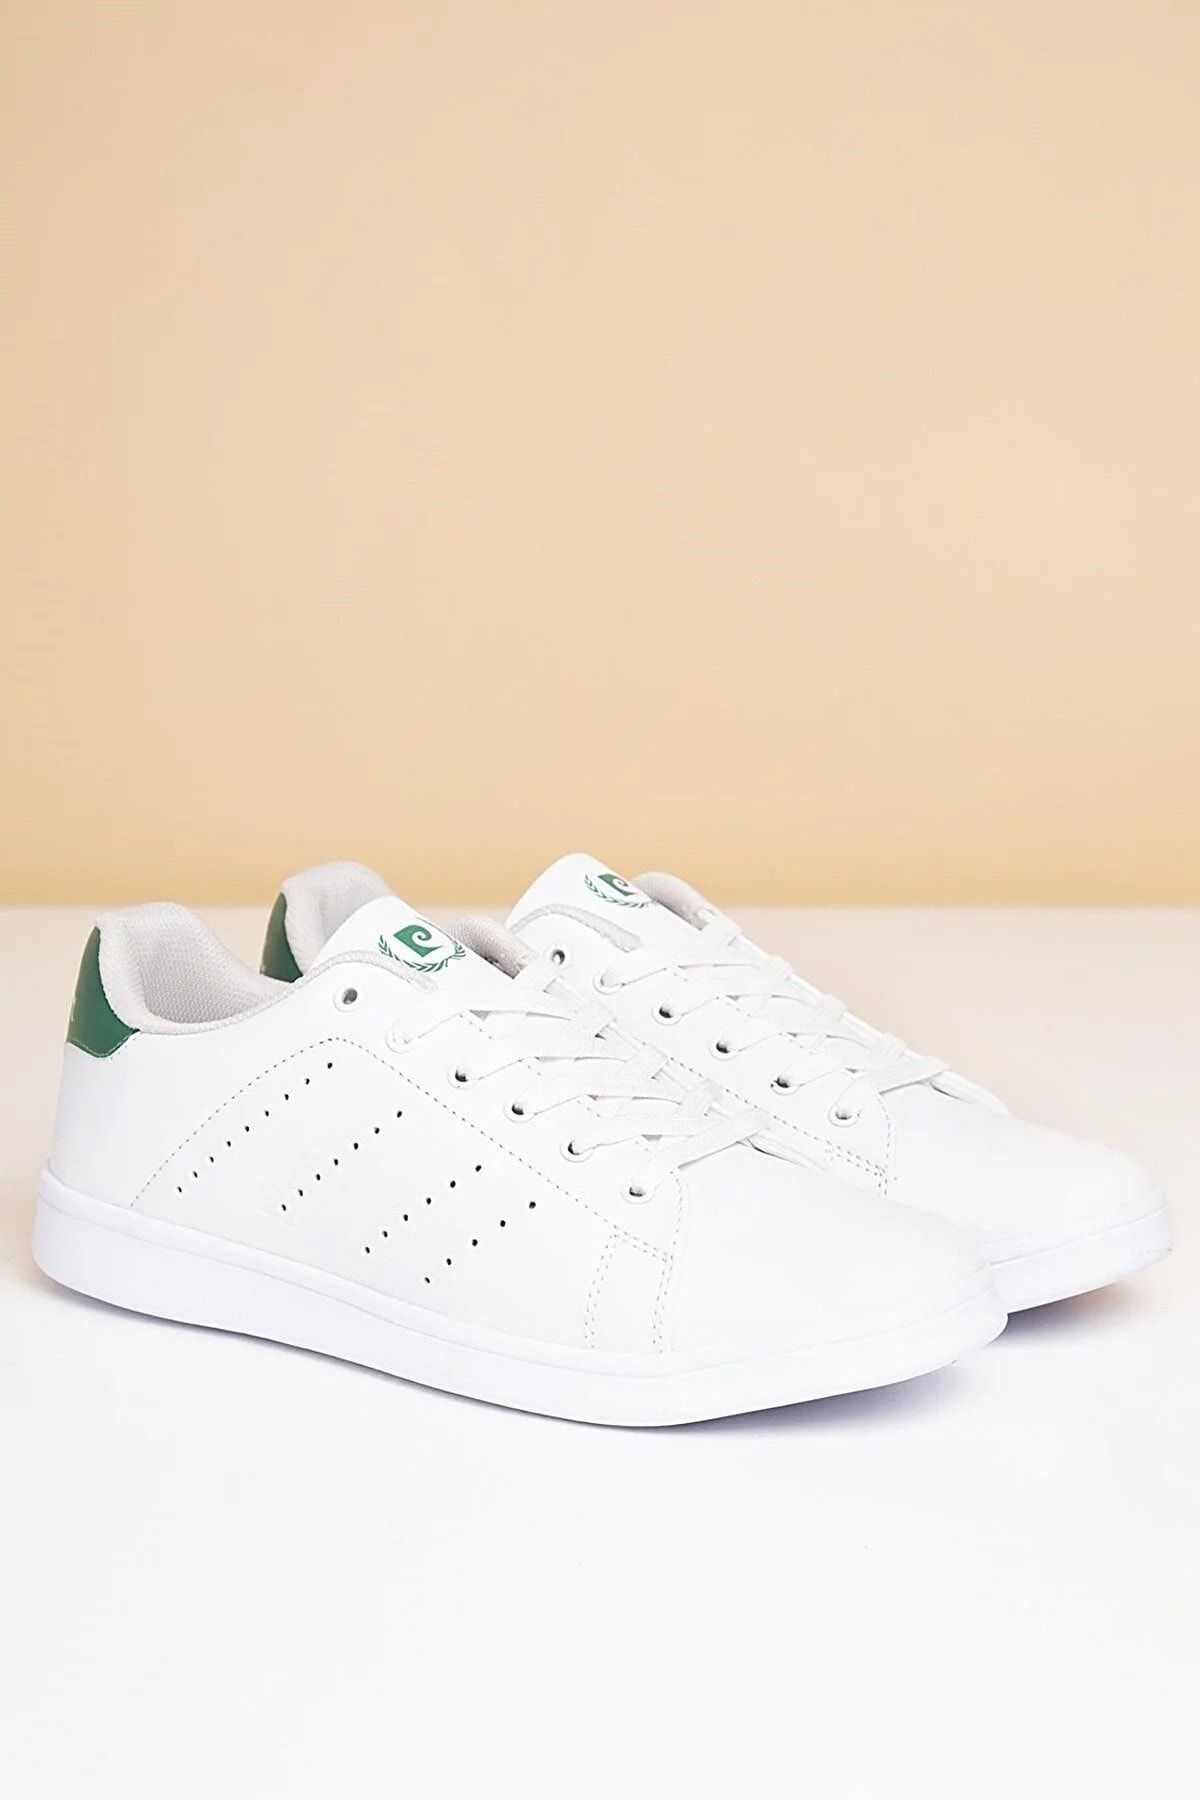 Pierre Cardin Yazlık Erkek Günlük Beyaz-yeşil Spor (40-44 Numara) Ayakkabı